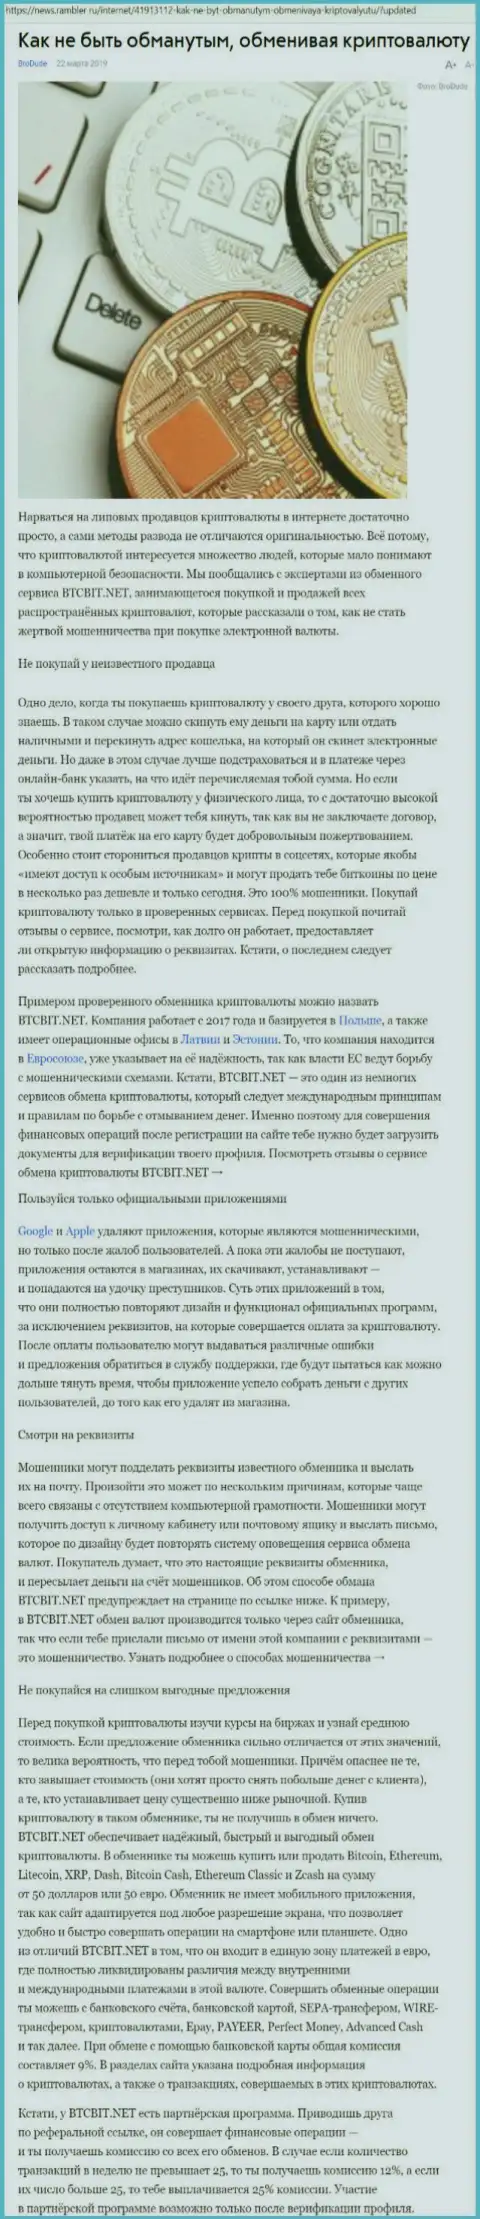 Статья об обменнике BTCBit на News Rambler Ru